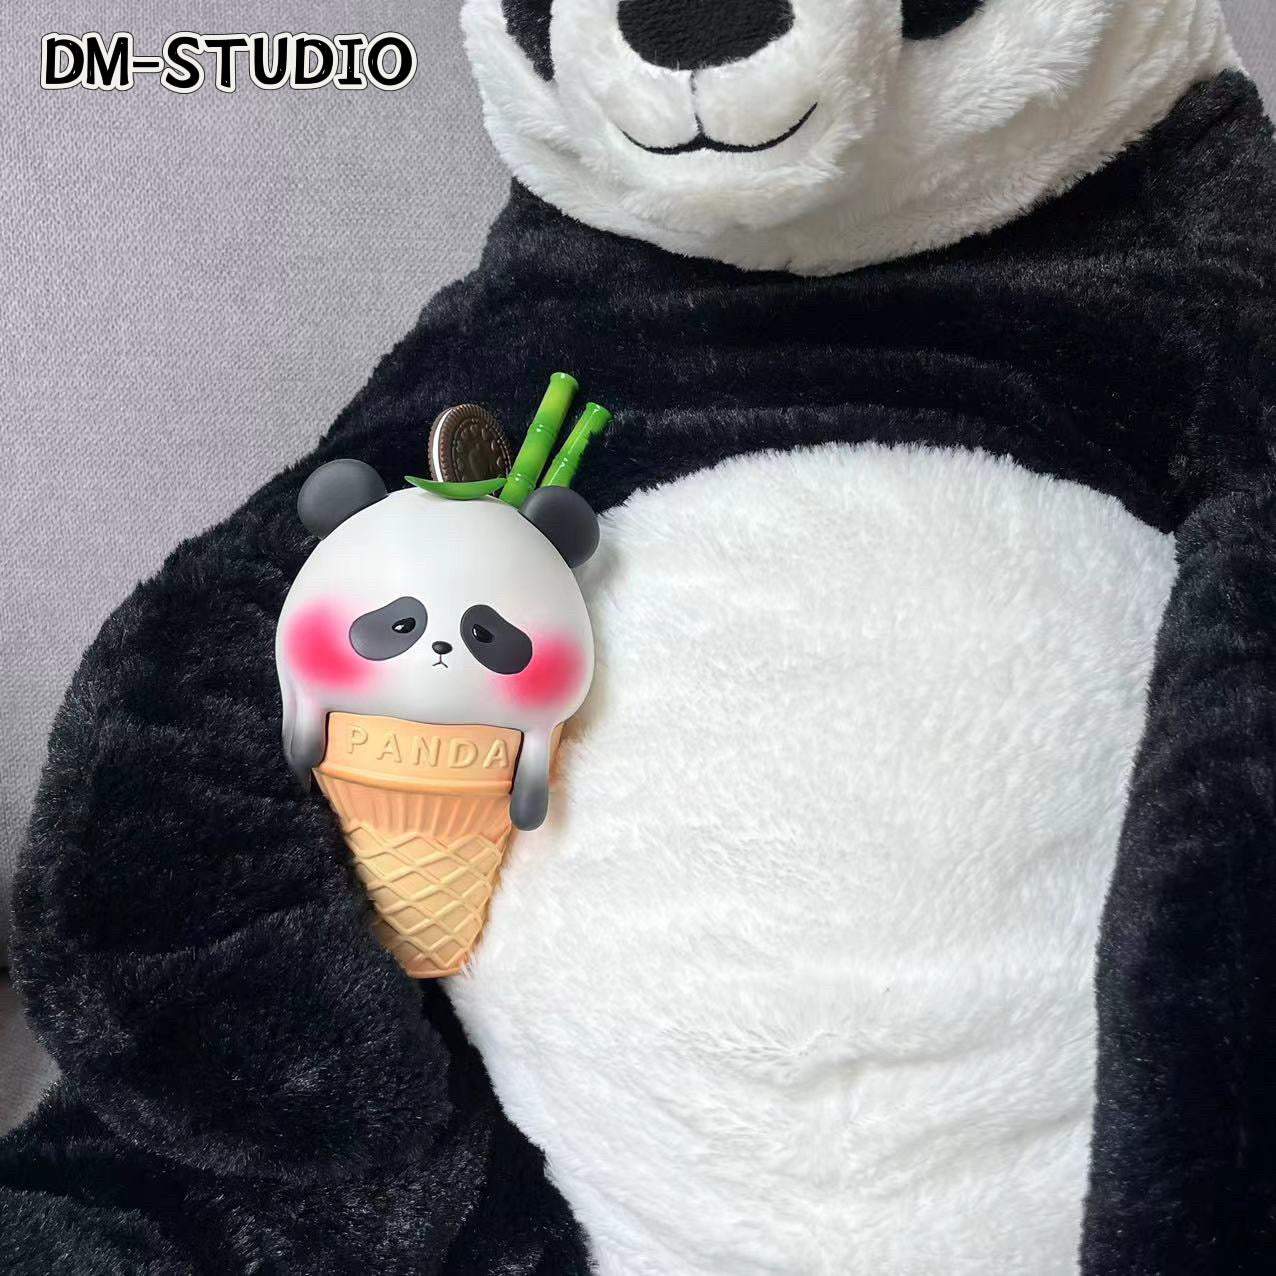 DM Studio - Panda IceCream [PRE-ORDER CLOSED]